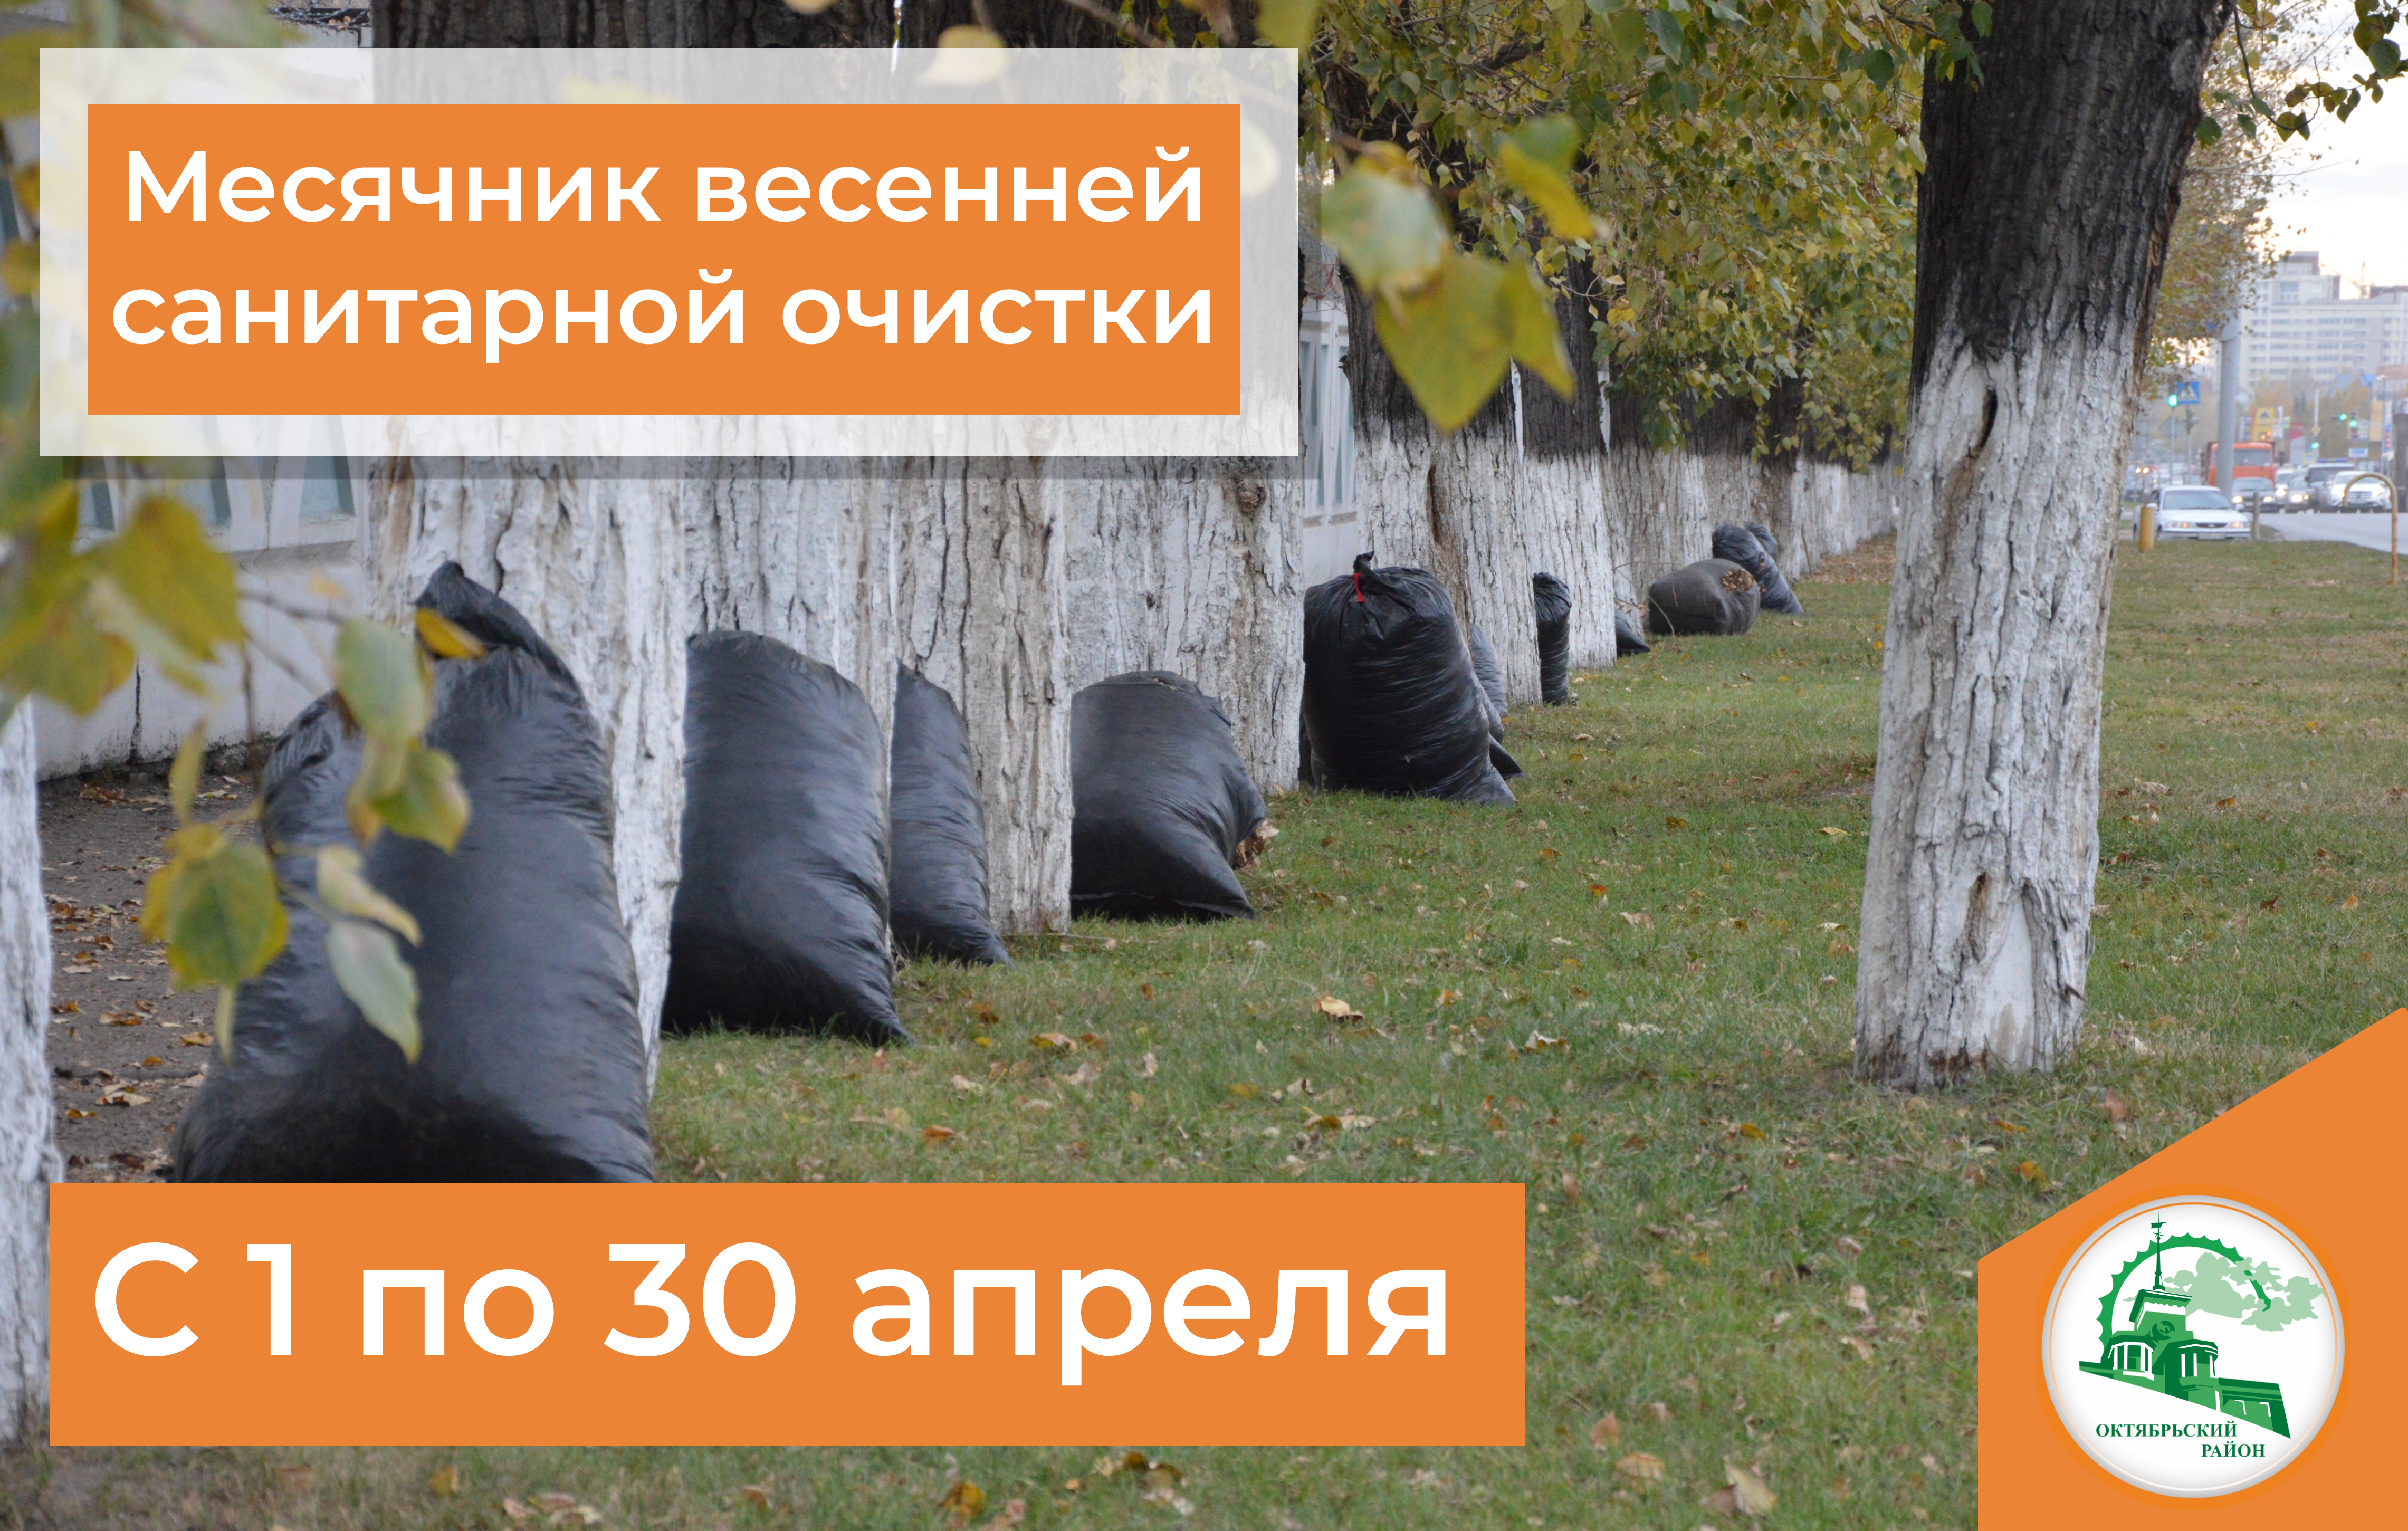 В Октябрьском районе Барнаула стартовал месячник весенней санитарной очистки и благоустройства